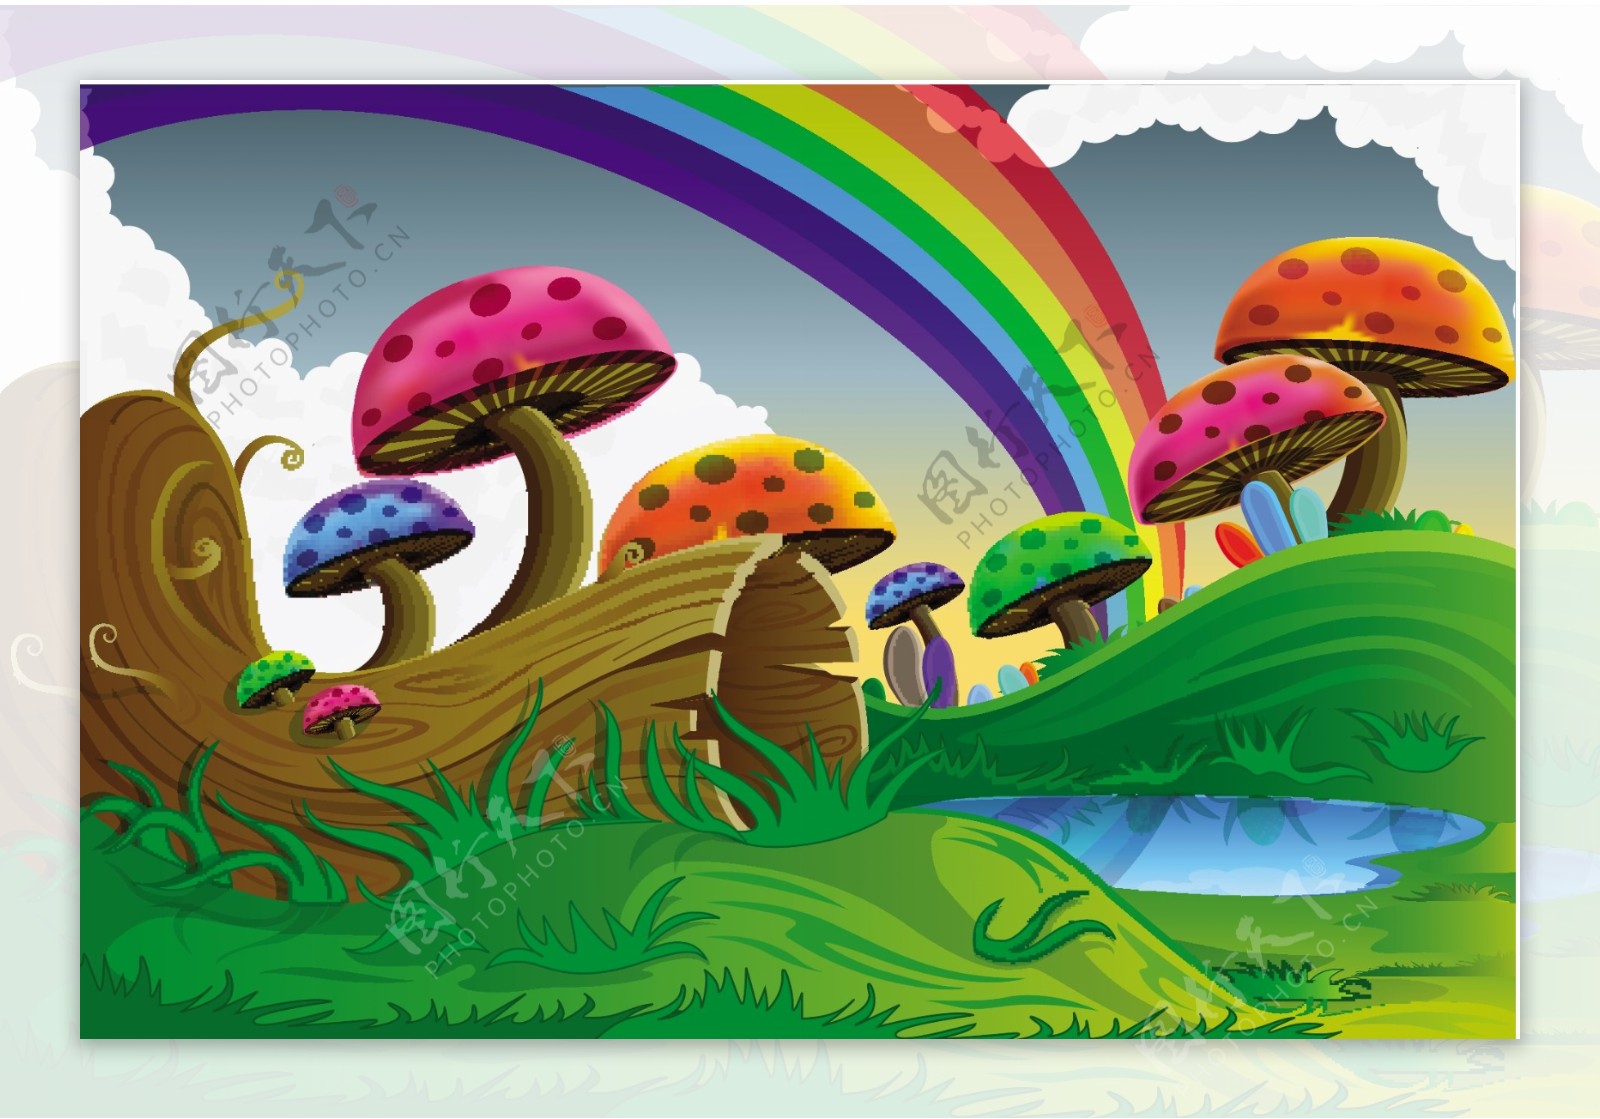 彩色蘑菇彩虹风景矢量图图片